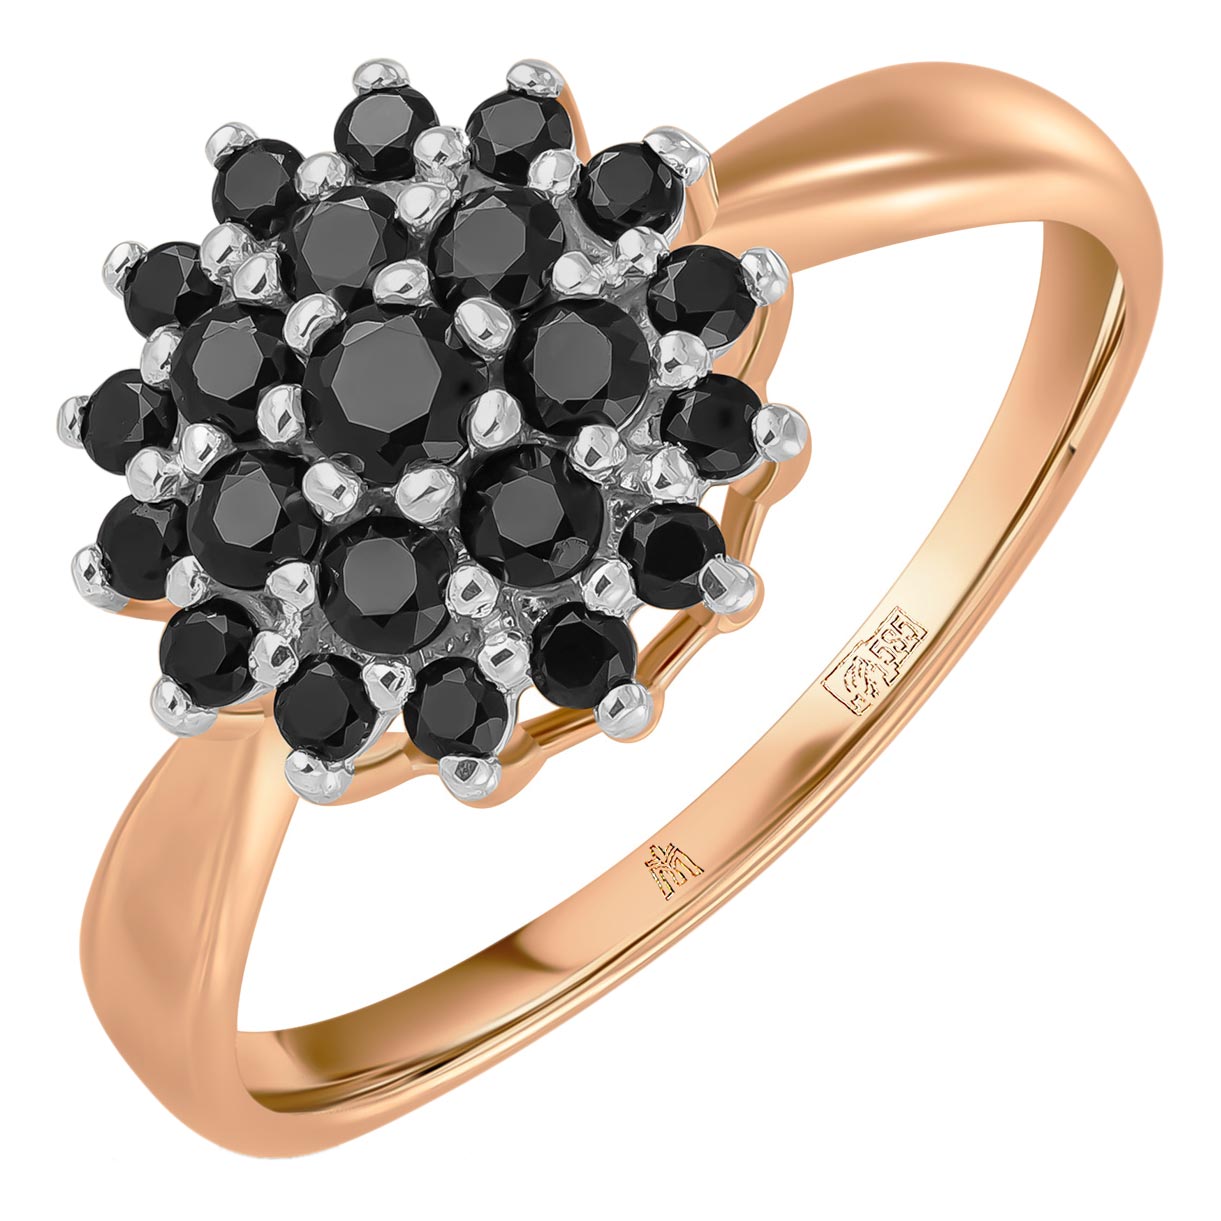 Золотое кольцо Лукас R01-C-L-35069-SC-r c черными сапфирами